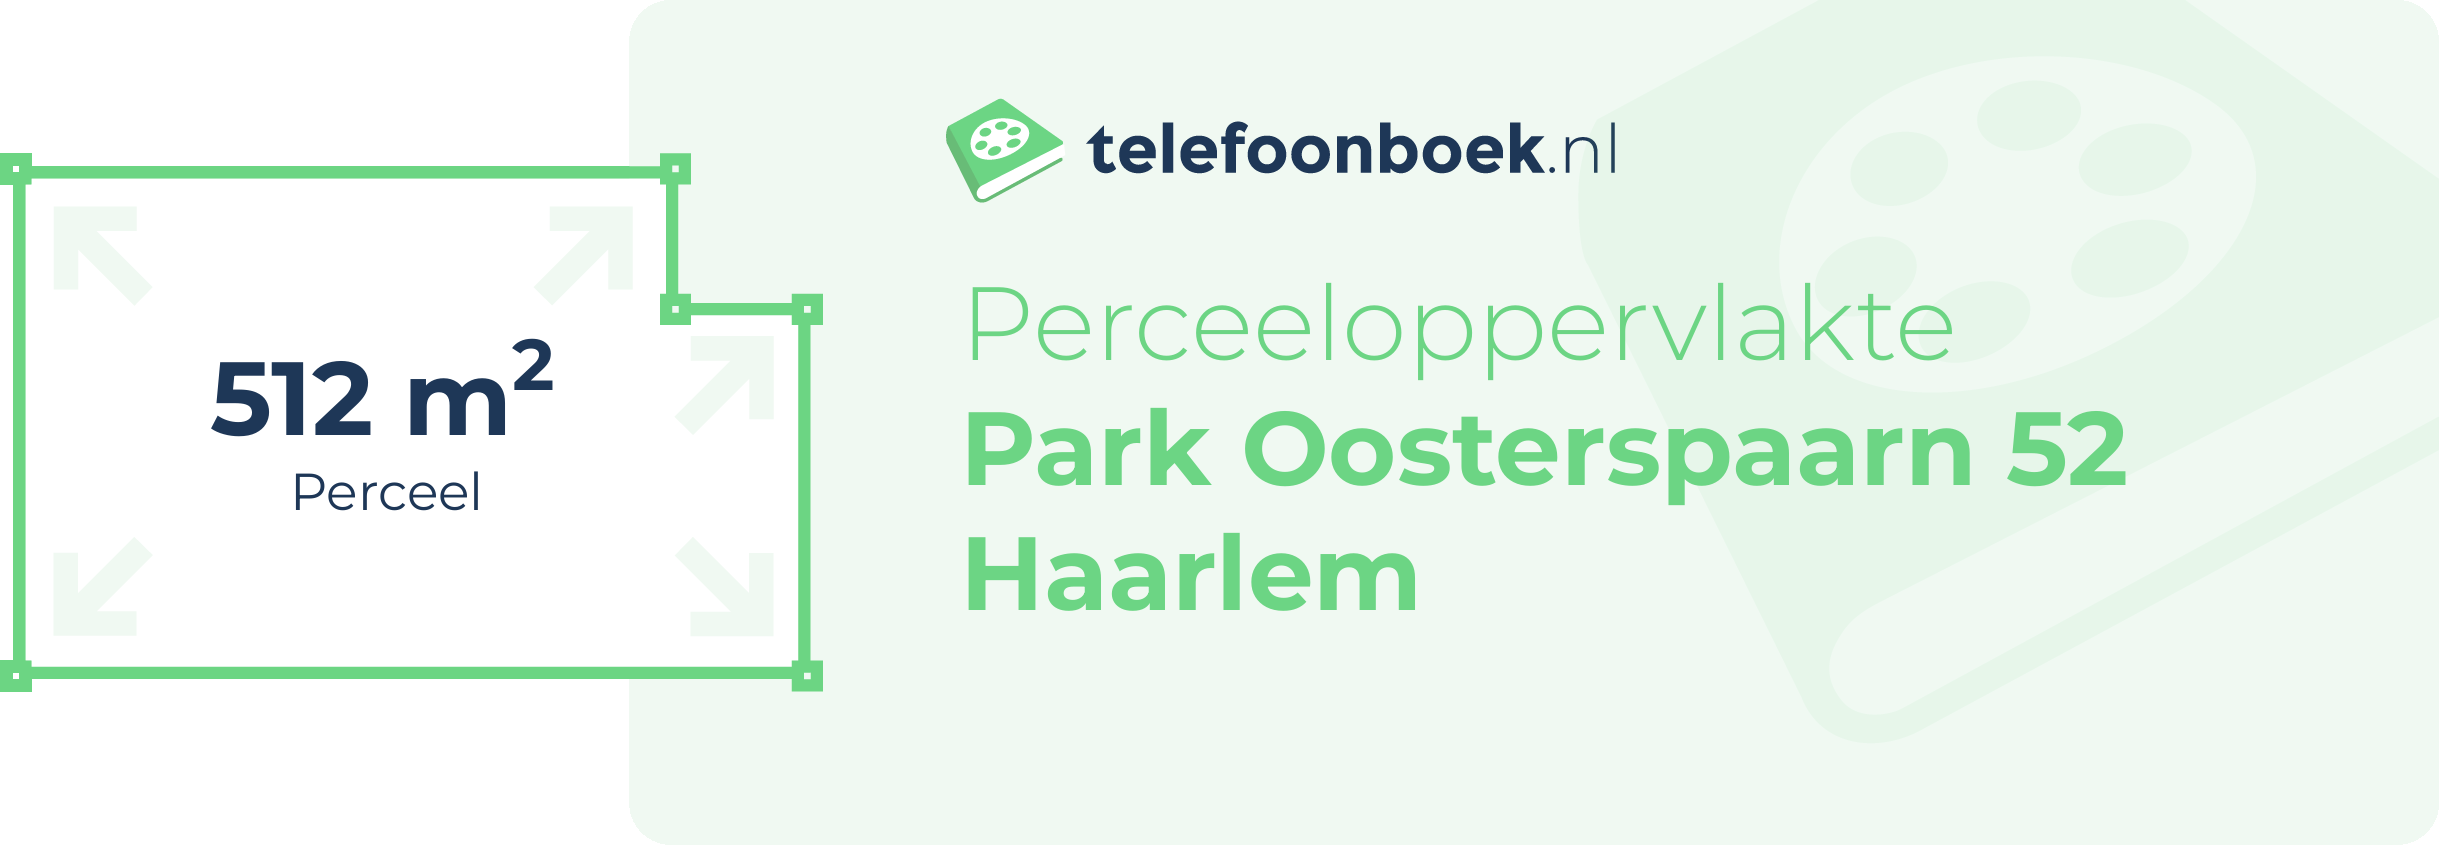 Perceeloppervlakte Park Oosterspaarn 52 Haarlem